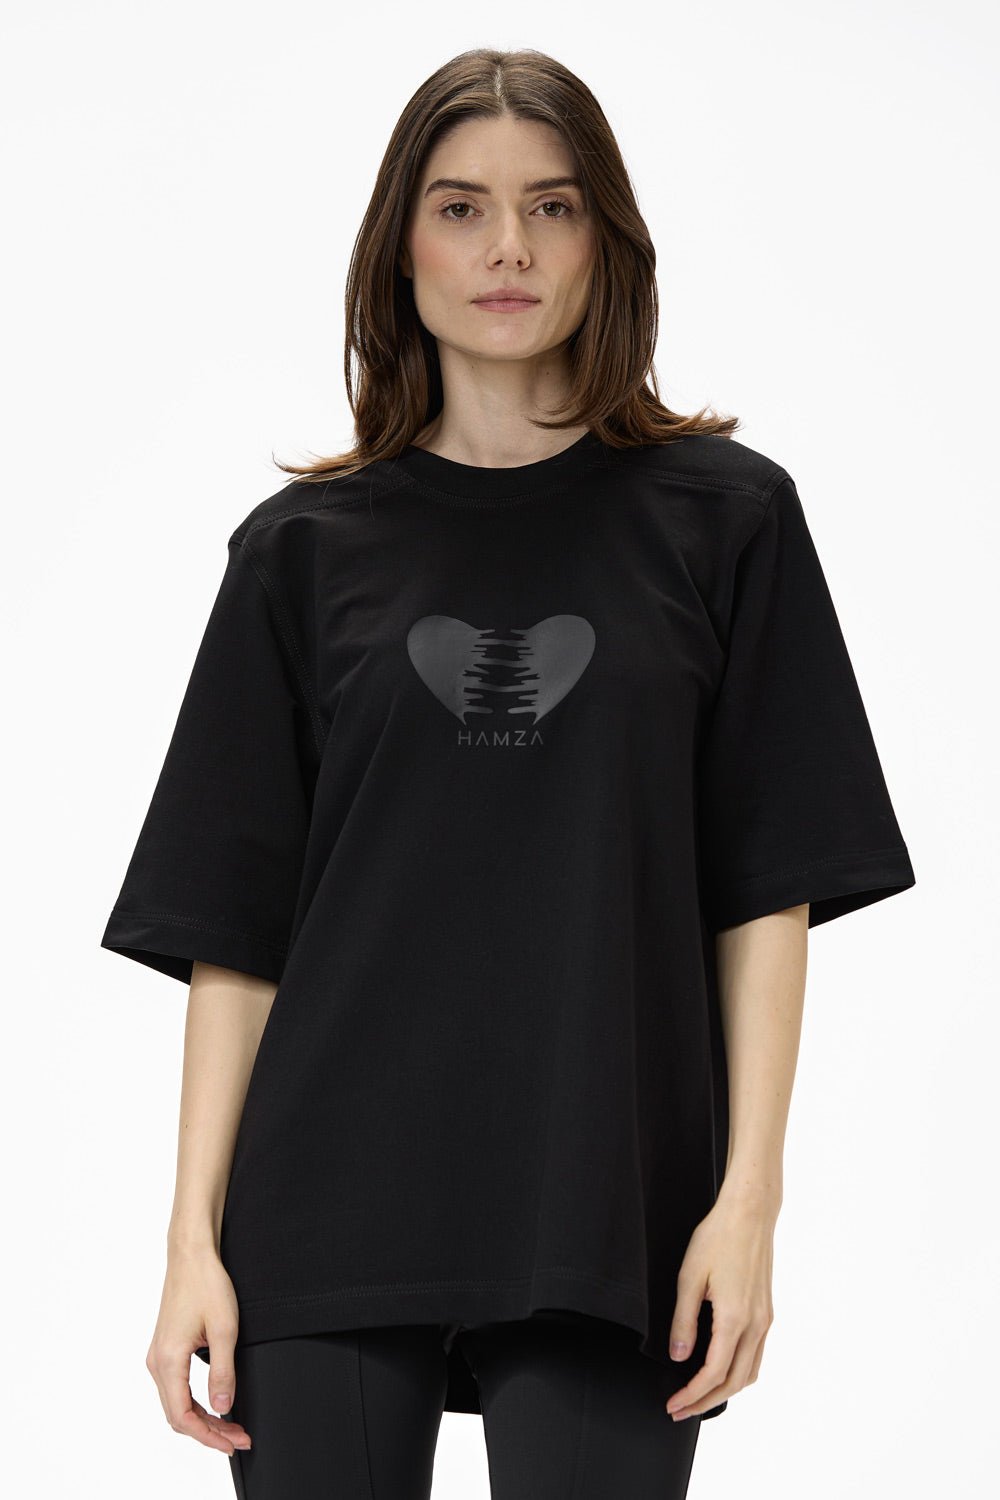 Tricou damă, negru, imprimeu Heart, bumbac premium, croială oversized, detalii (cusătură decorativă, imprimeu ton în ton).